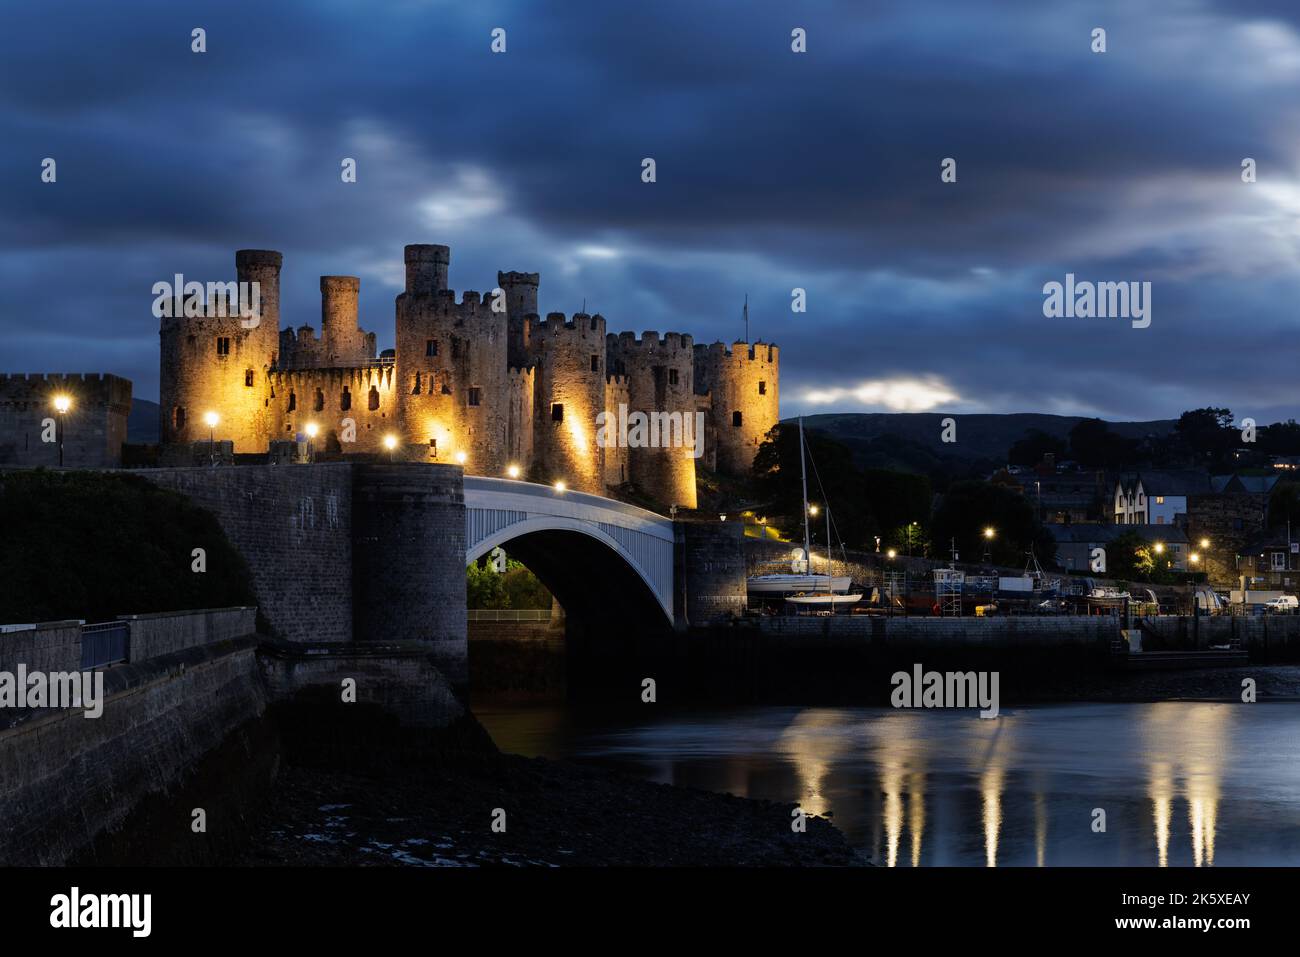 Conwy, Wales, UK, September 28. 2022: Bei Einbruch der Dunkelheit erleuchtet Edward I.'s berühmtes und gut erhaltenes Schloss am Ufer des Flusses Conwy. Stockfoto